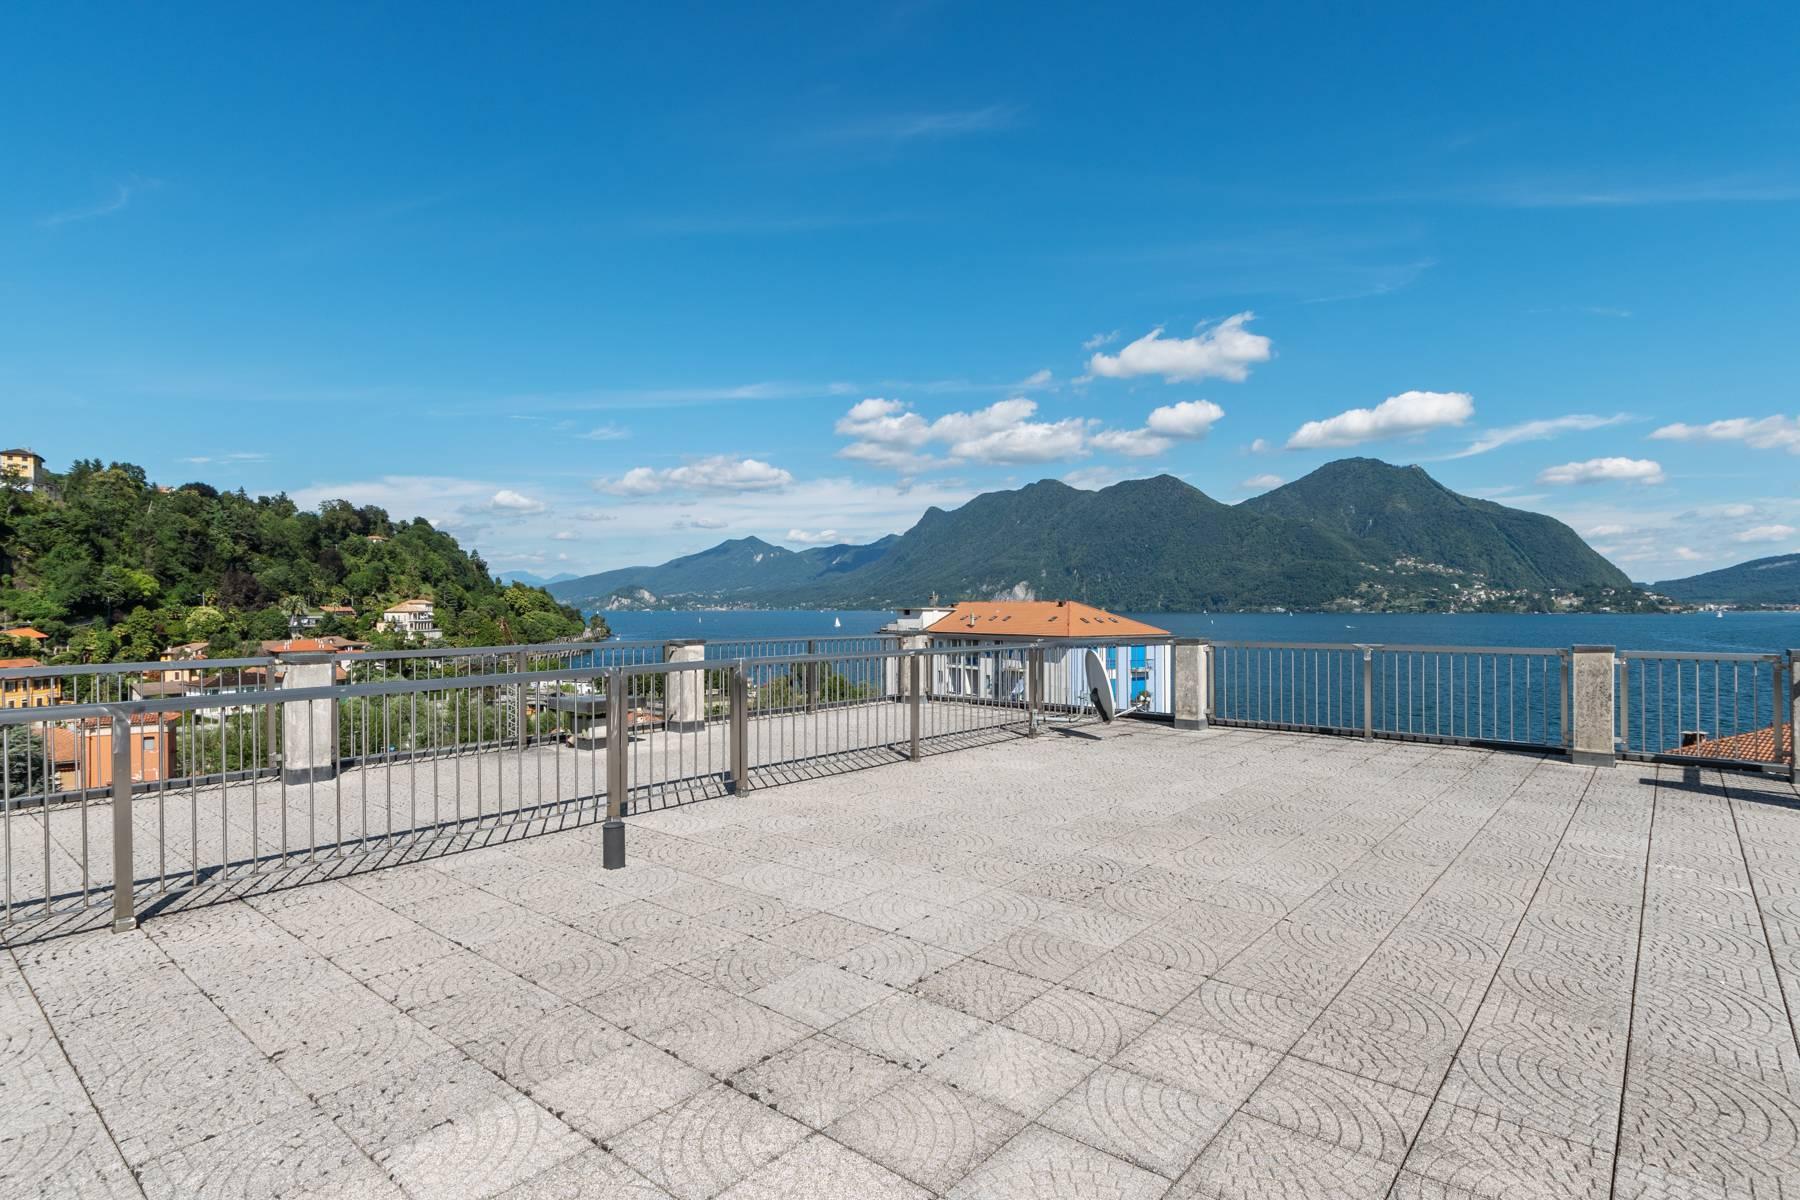 Attico mozzafiato con balcone e terrazza che dominano tutto il lago Maggiore situato nel centro di Intra - 29